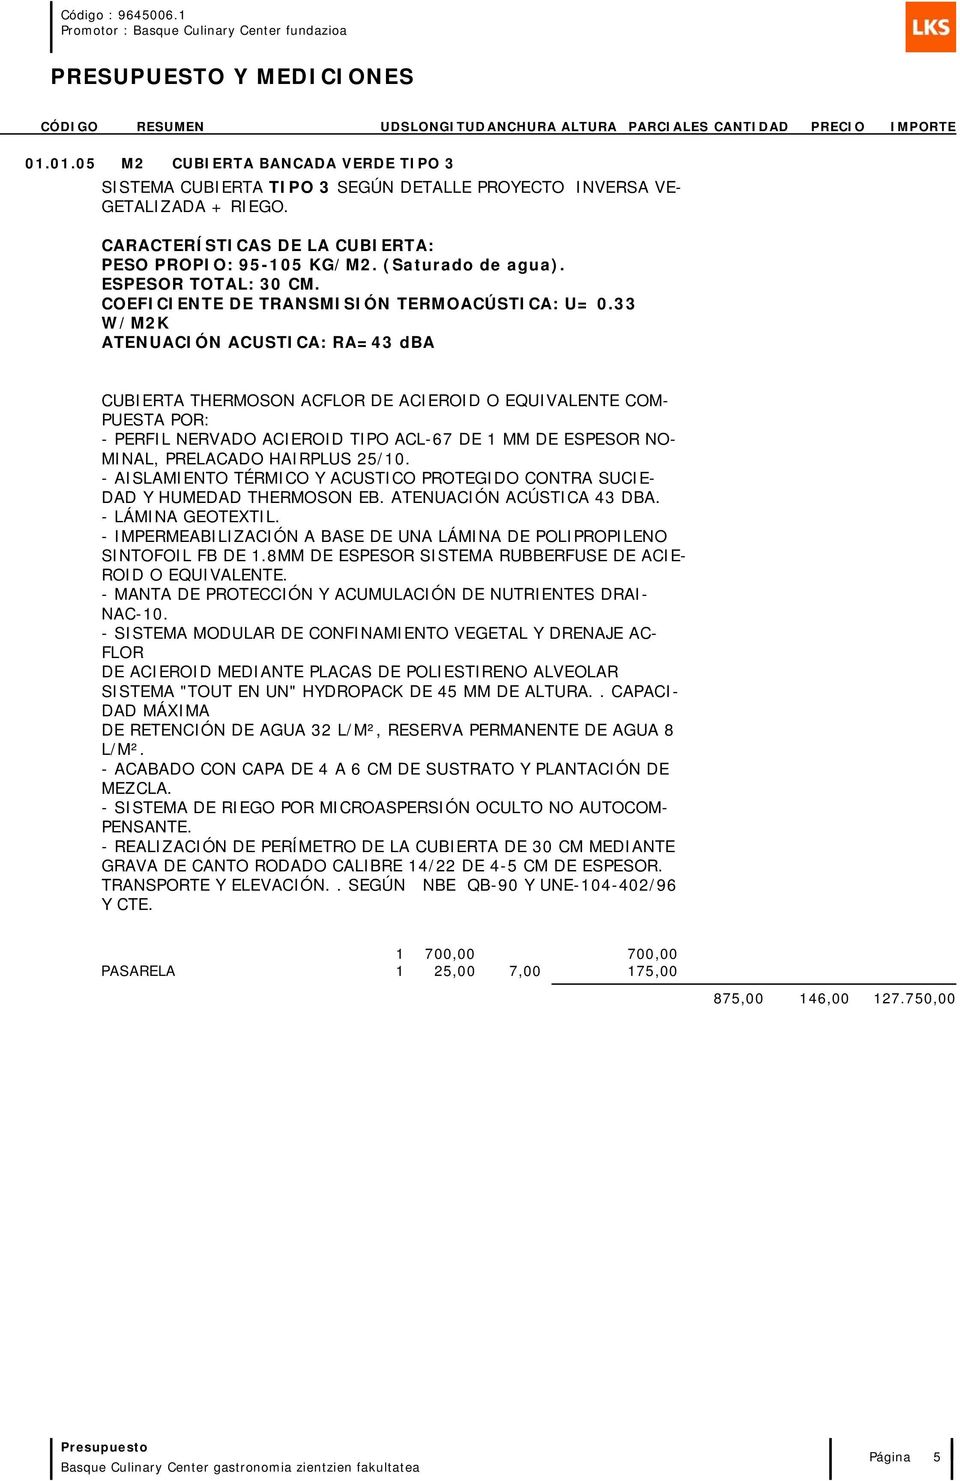 33 CUBIERTA THERMOSON AC DE ACIEROID O EQUIVALENTE COM- PUES - PERFIL NERVADO ACIEROID TIPO ACL-67 DE 1 MM DE ESPESOR NO- MINAL, PRELACADO HAIRPLUS 25/10.